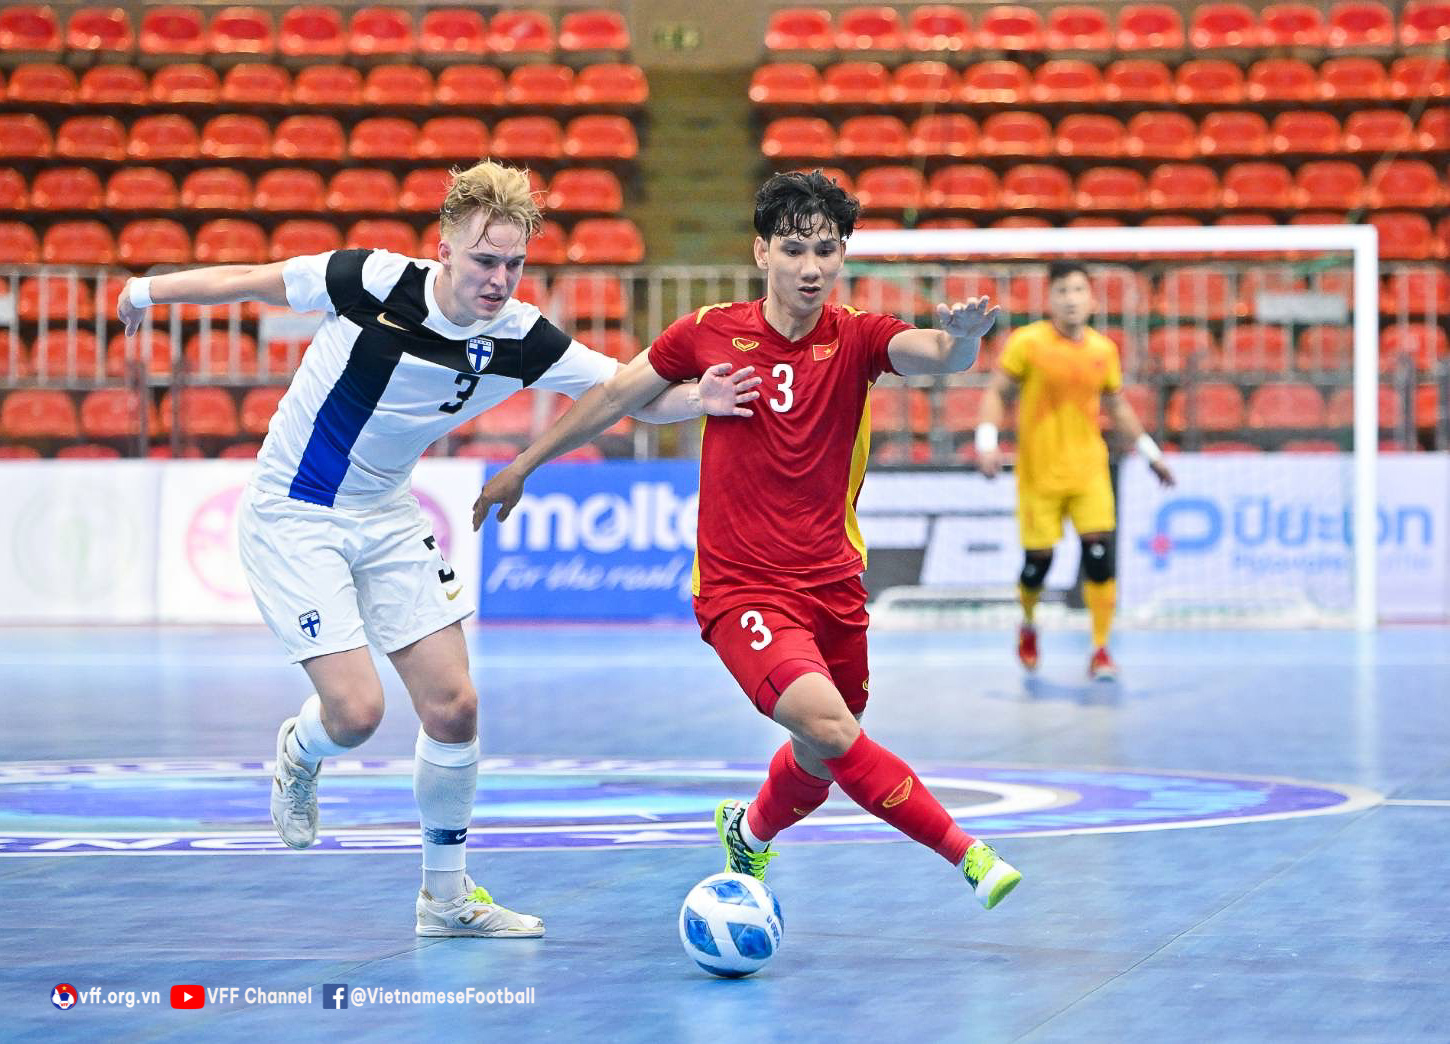 Vff - Continental Futsal Championship 2022: Đt Việt Nam – Đt Phần Lan 2-4